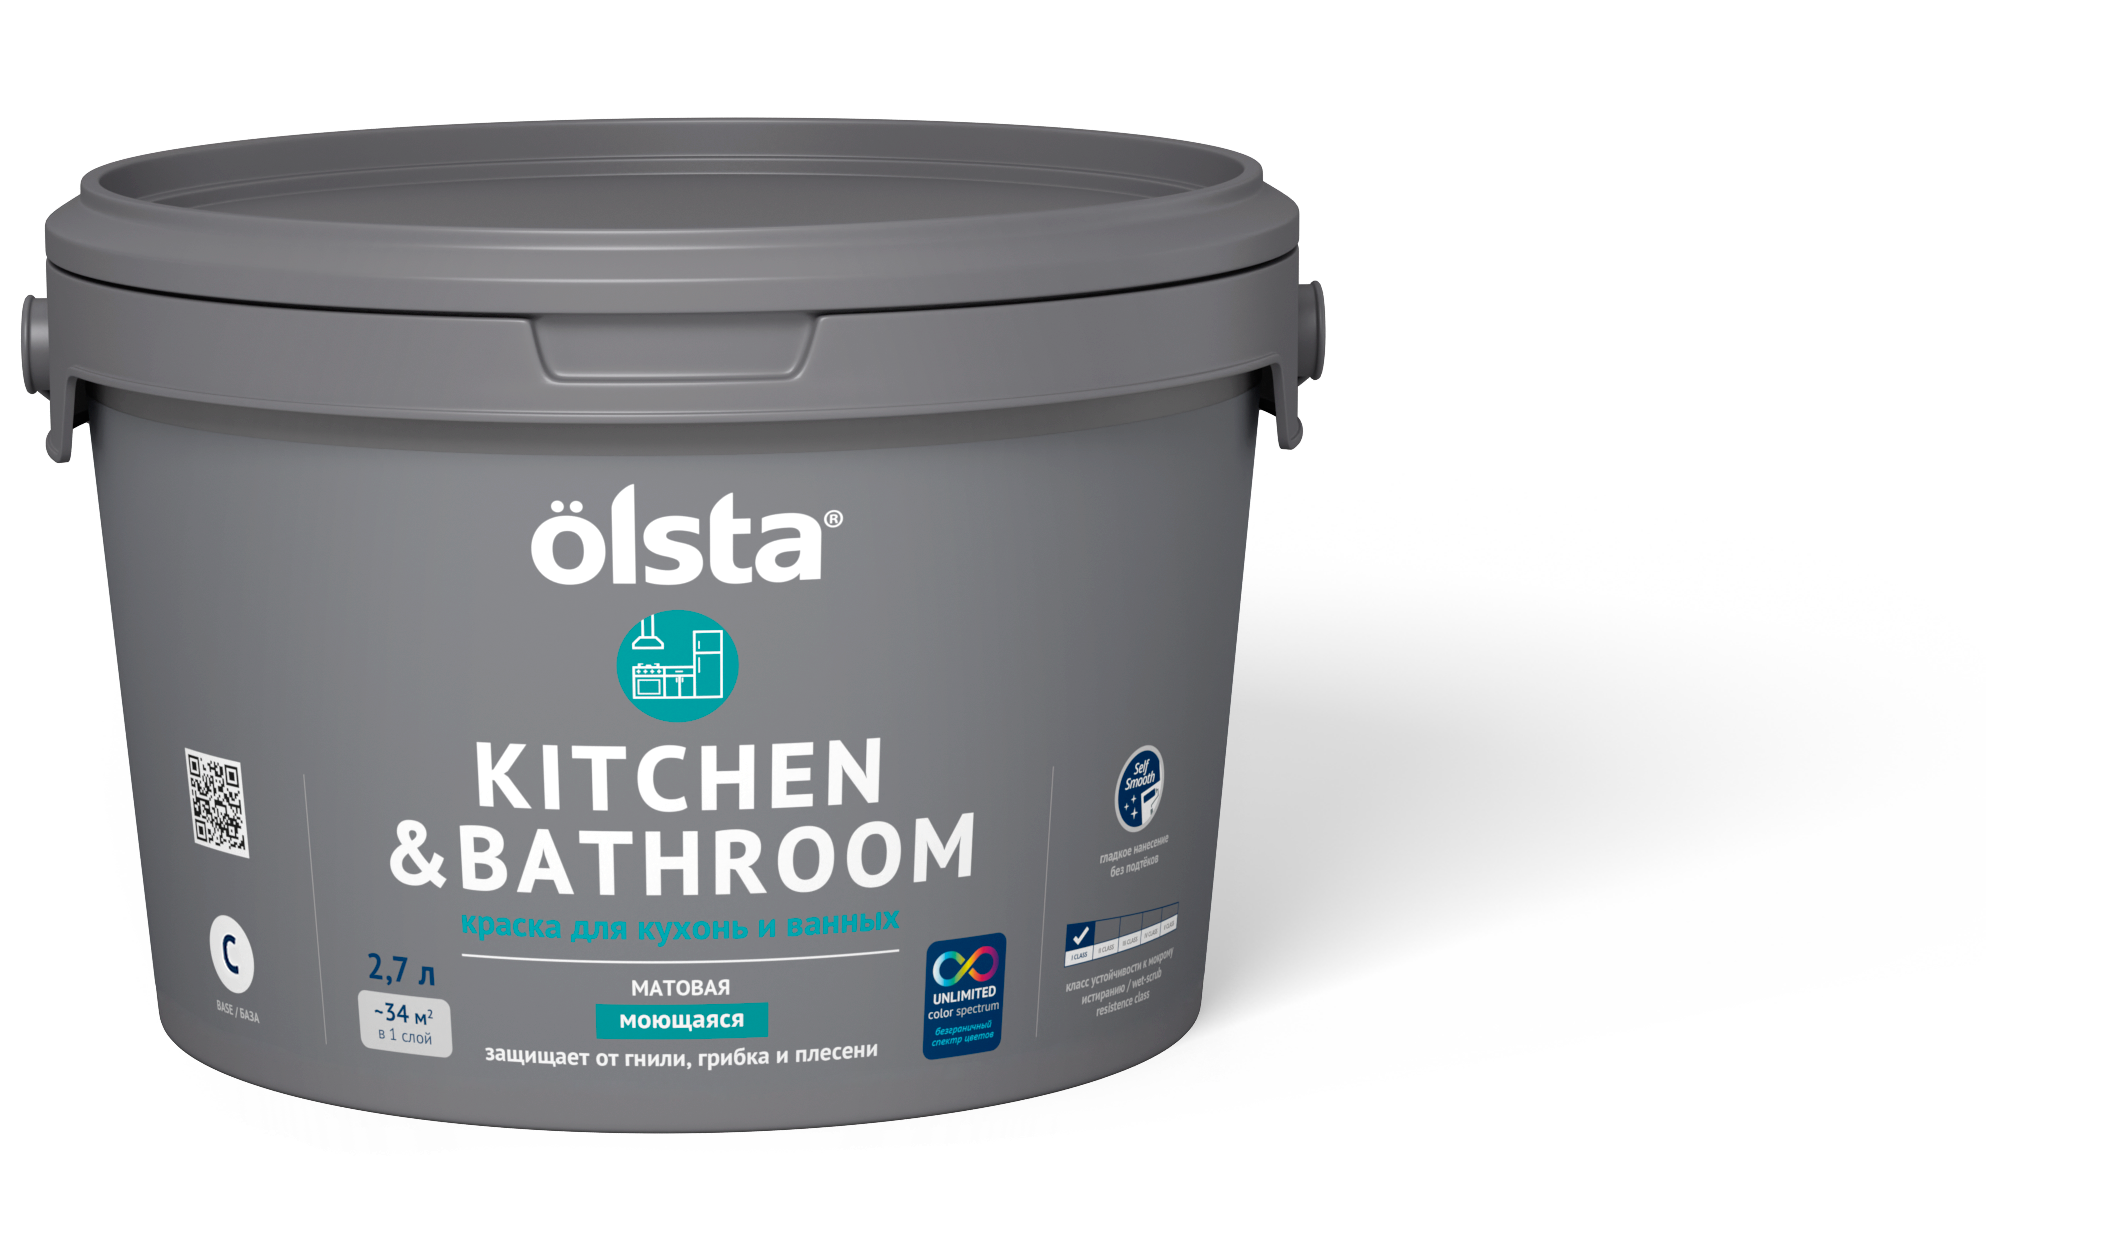 Краска для кухонь и ванных Olsta Kitchen&bathroom База C 2,7 л (только под колеровку) краска для кухонь и ванных olsta kitchen